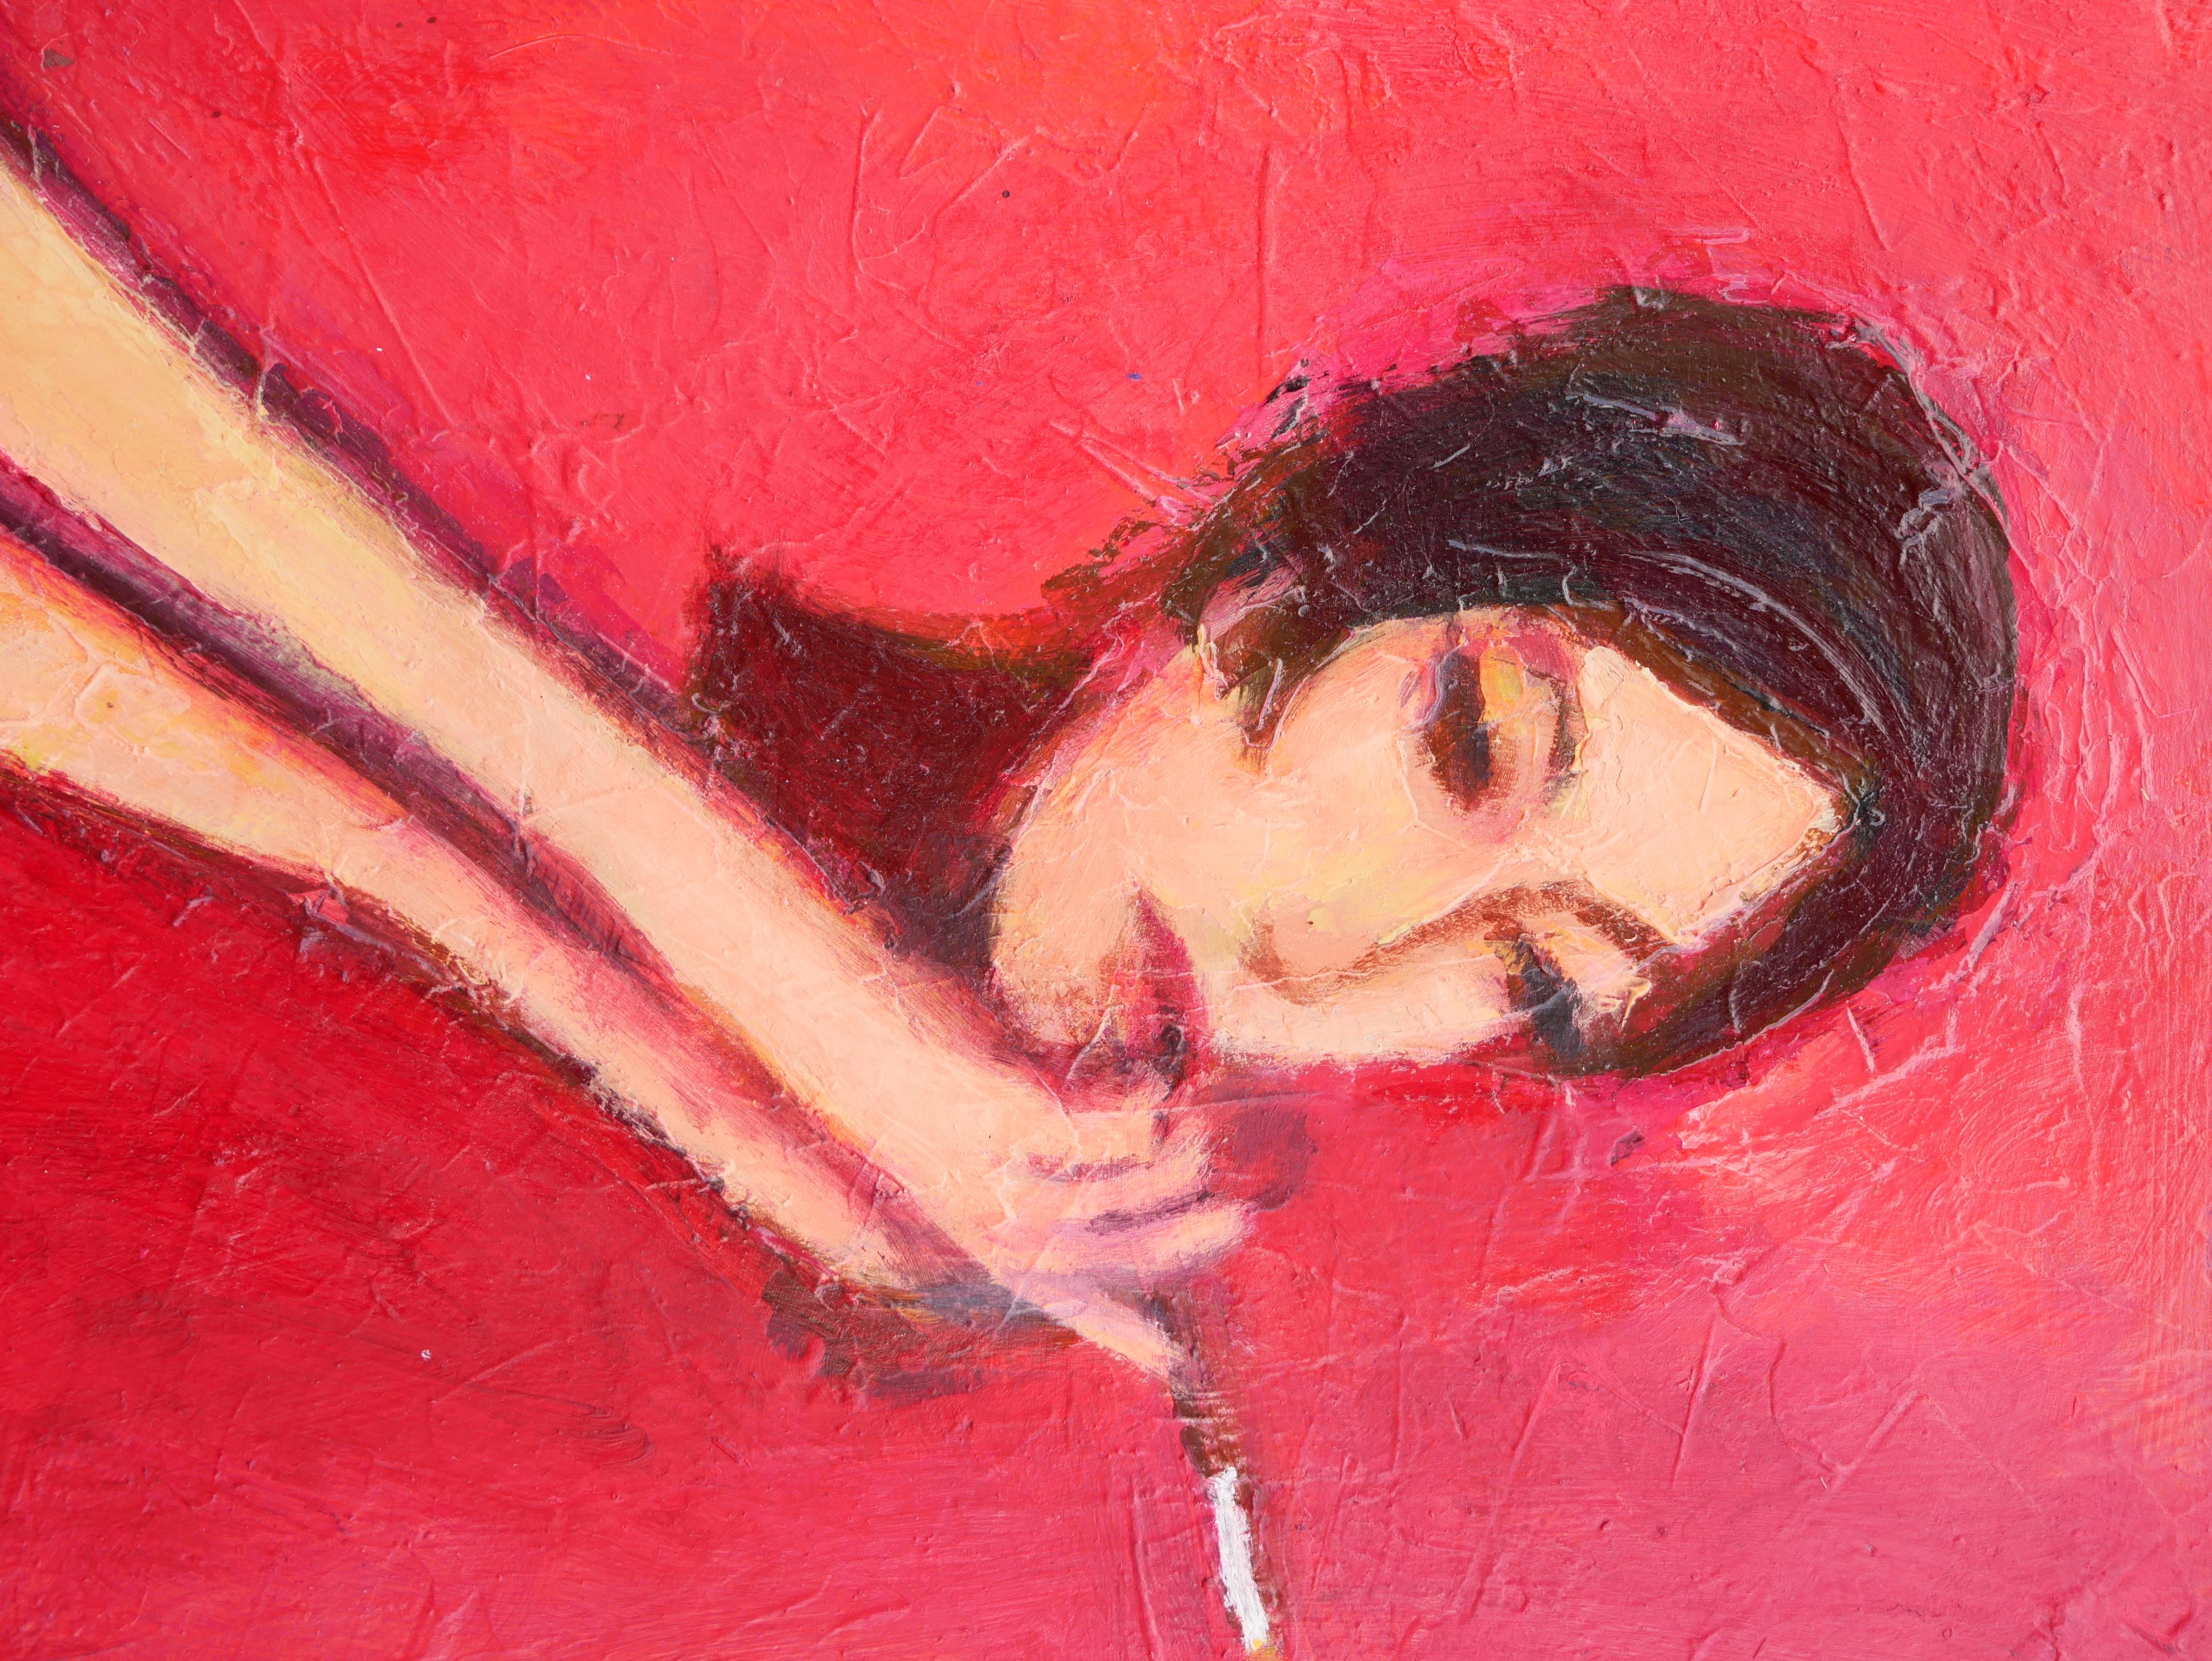 Lady with Cigarette - Peinture figurative abstraite aux tons rouges 1